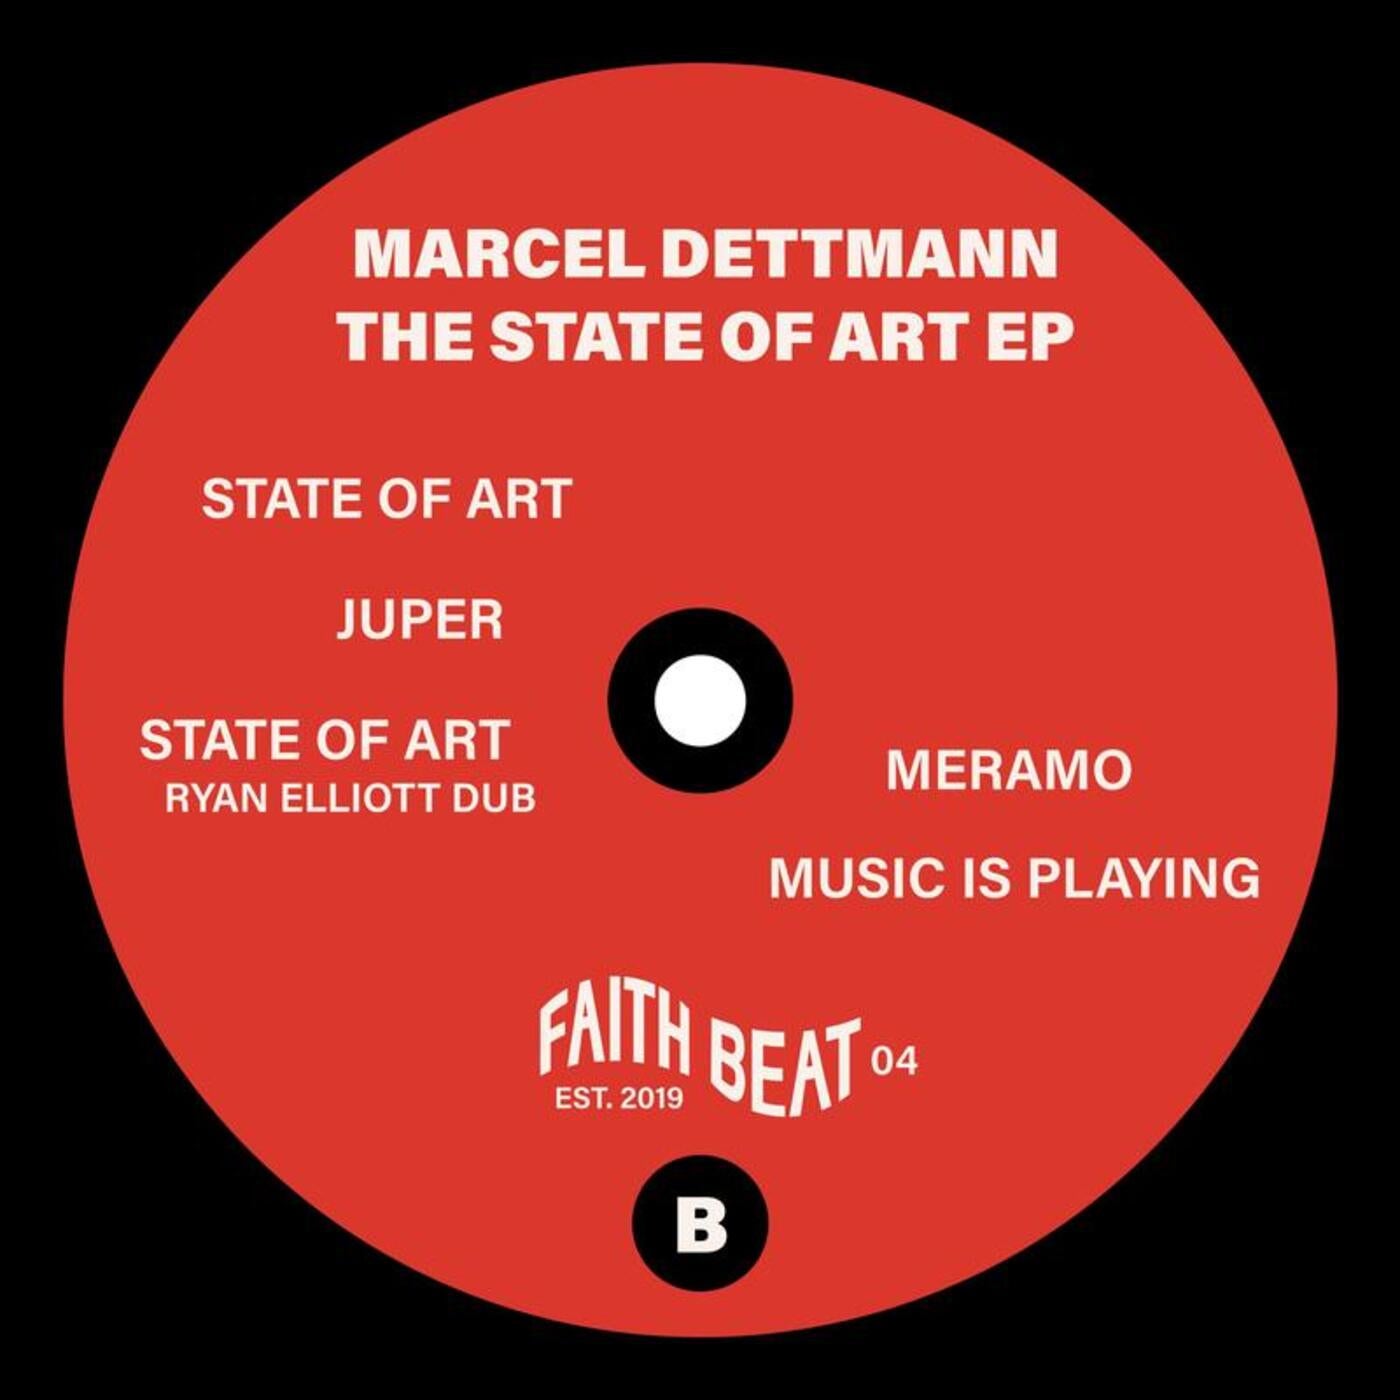 image cover: Marcel Dettmann - The State of Art EP / FAITHBEAT04